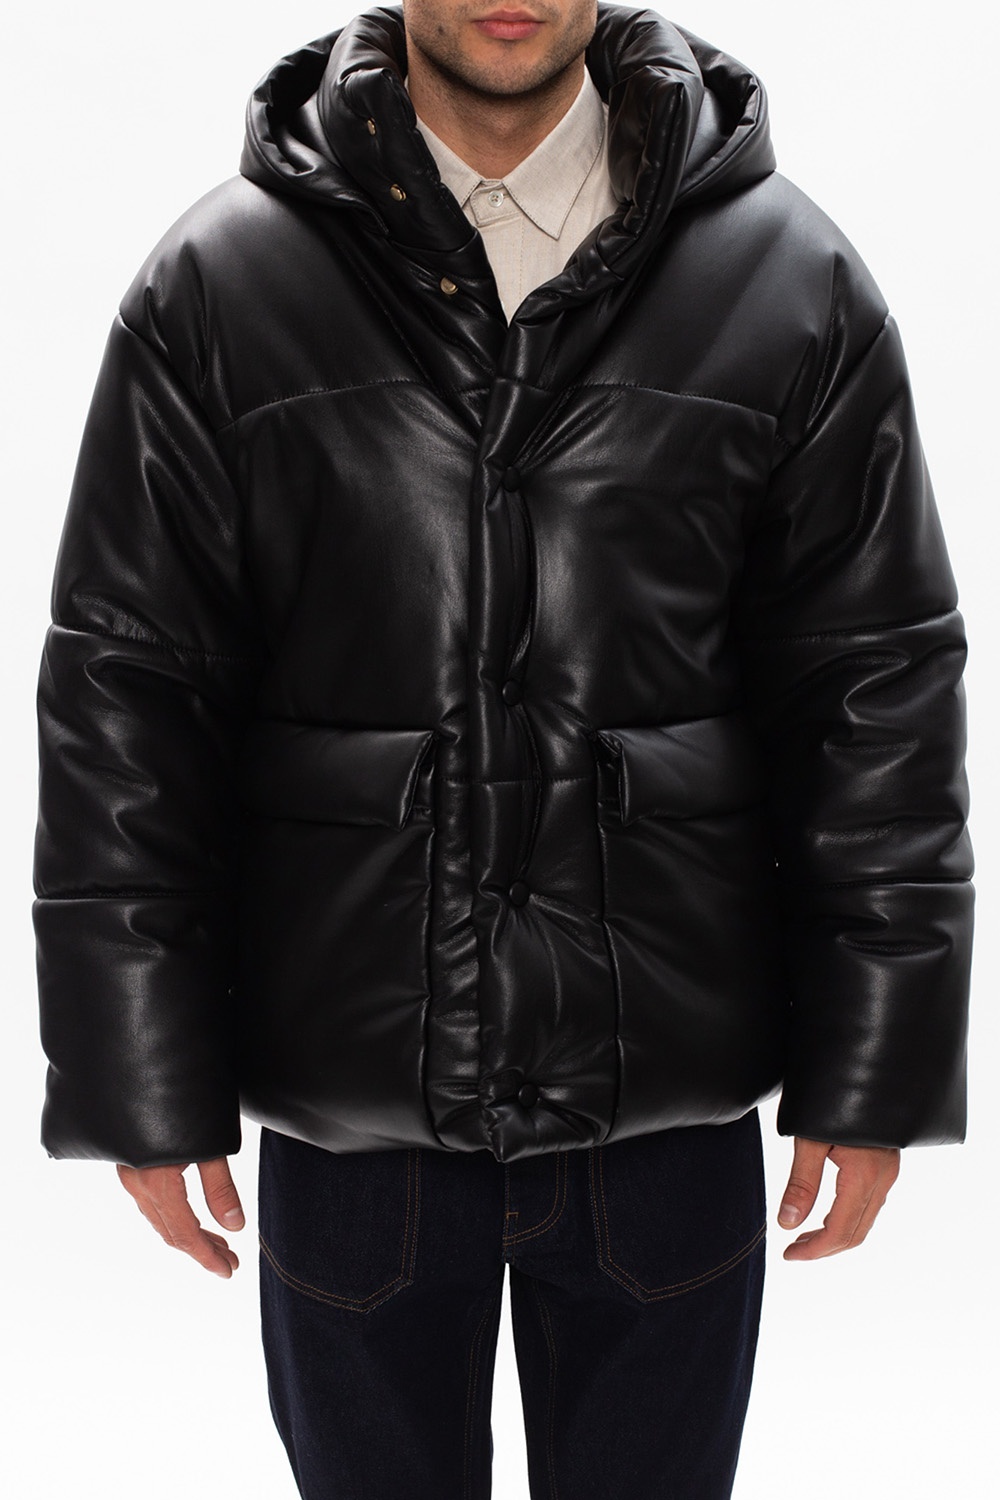 Nanushka BOSS lightweight zipped jacket